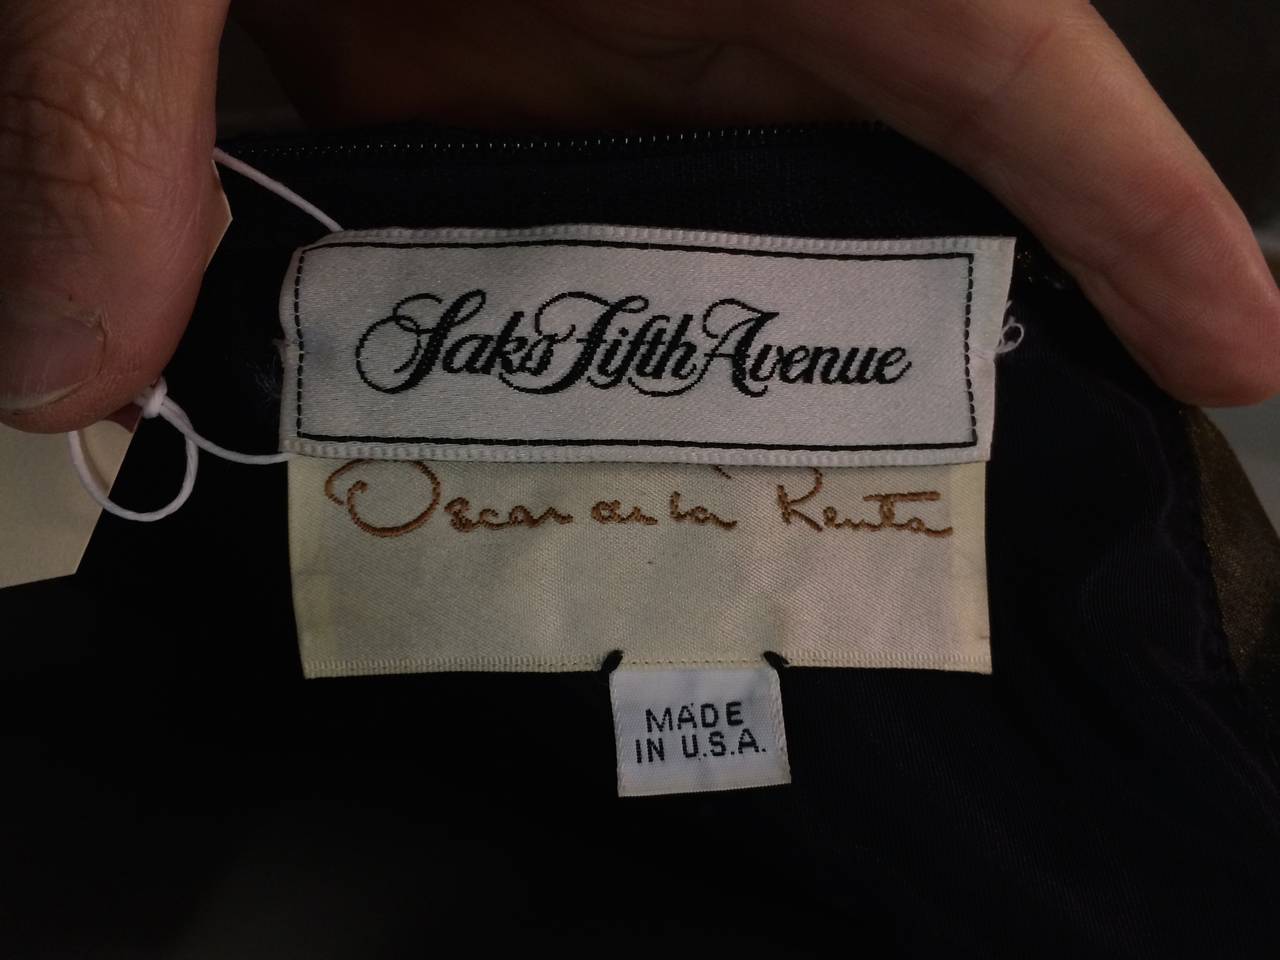 Oscar de la Renta for Sak's Fifth Avenue 90s long velvet gown. 5